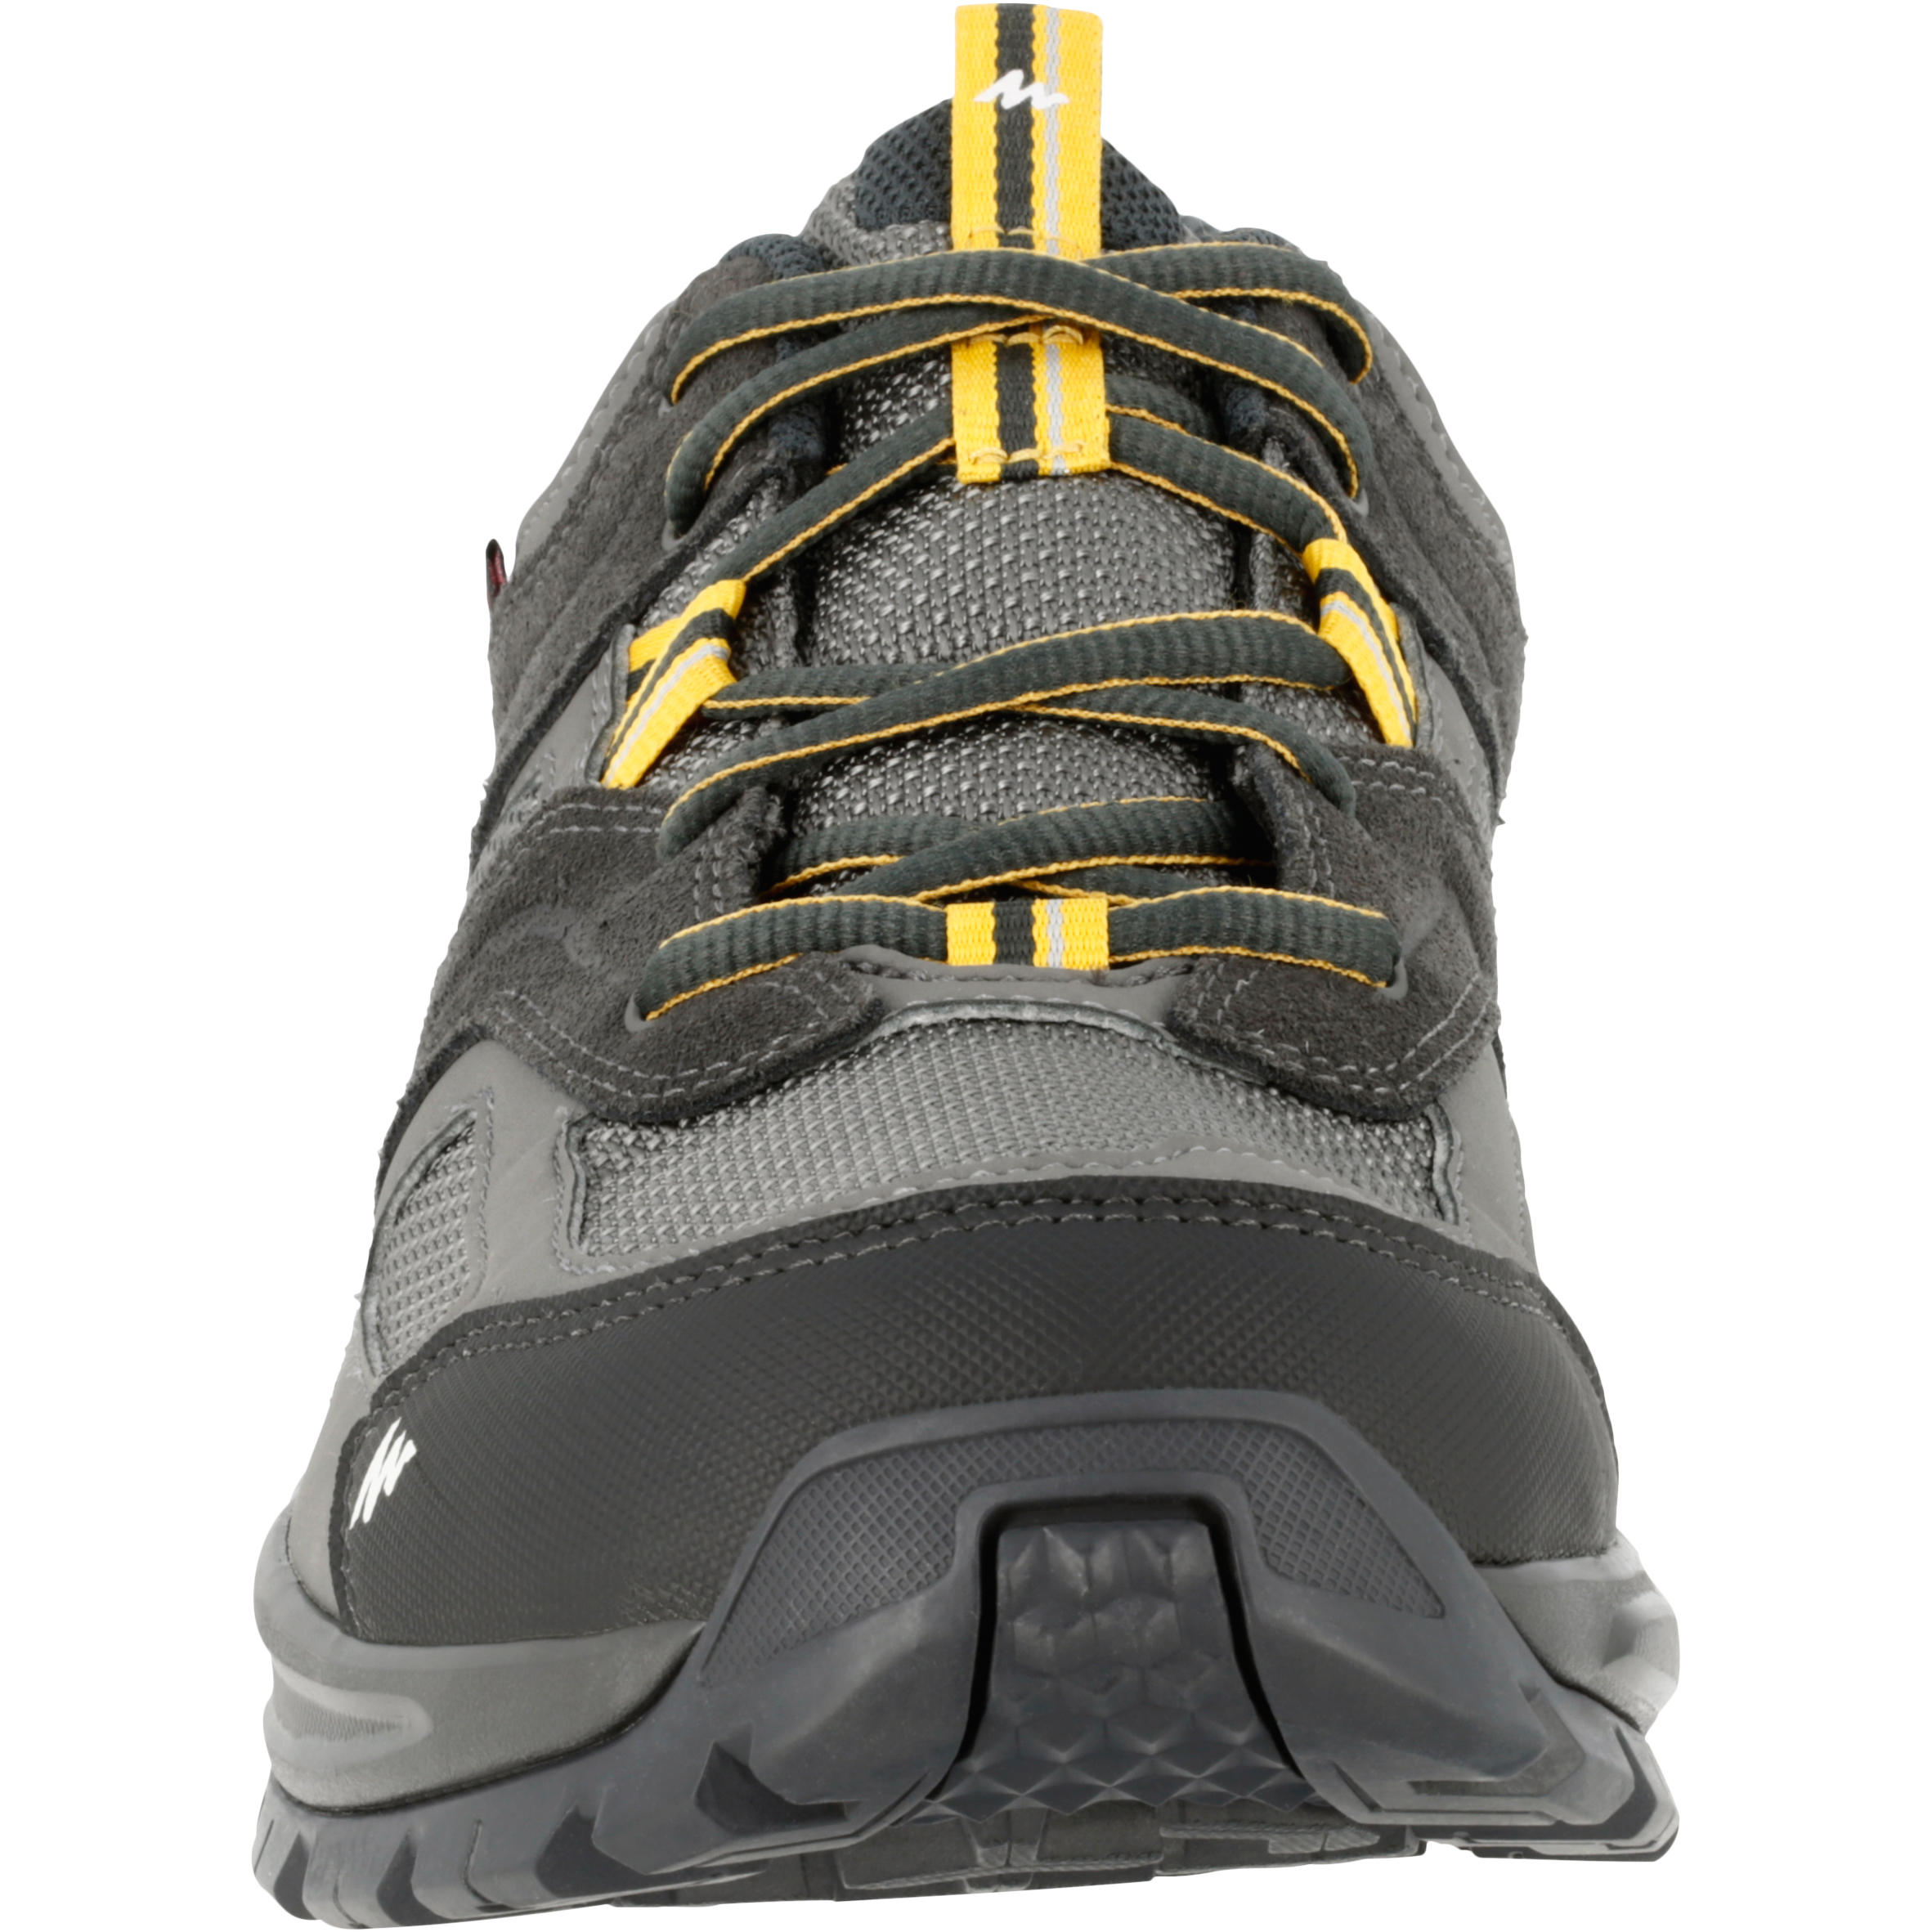 Arpenaz 100 Men's Waterproof Hiking Shoes Brown  2/13